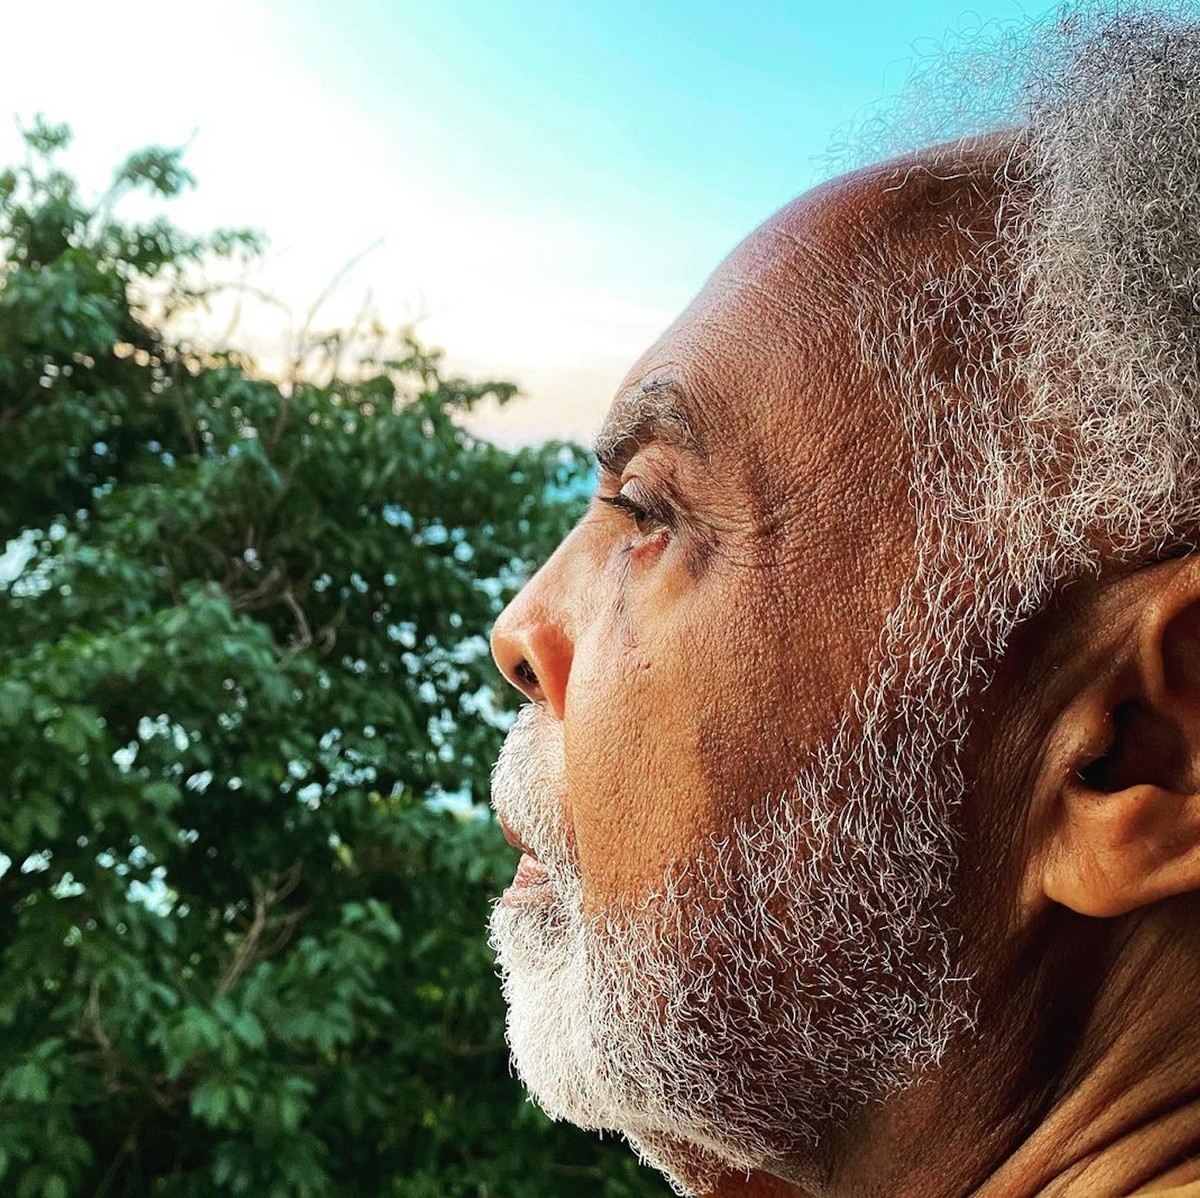 O alquimista Gilberto Gil chega imortal aos 80 anos |  Weblog do Mauro Ferreira